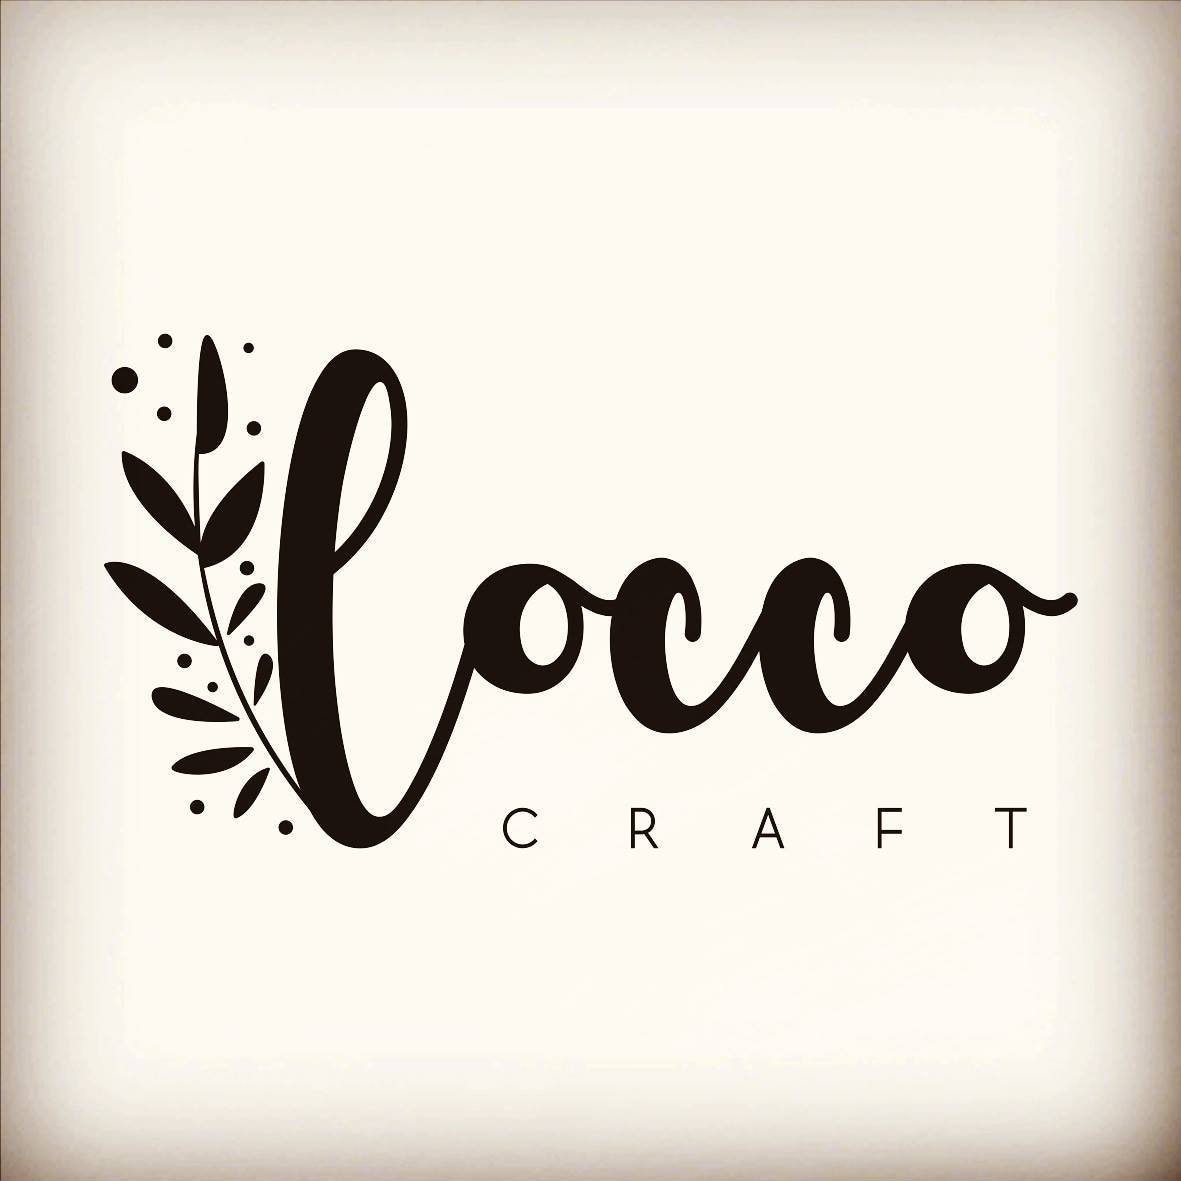 Locco Craft